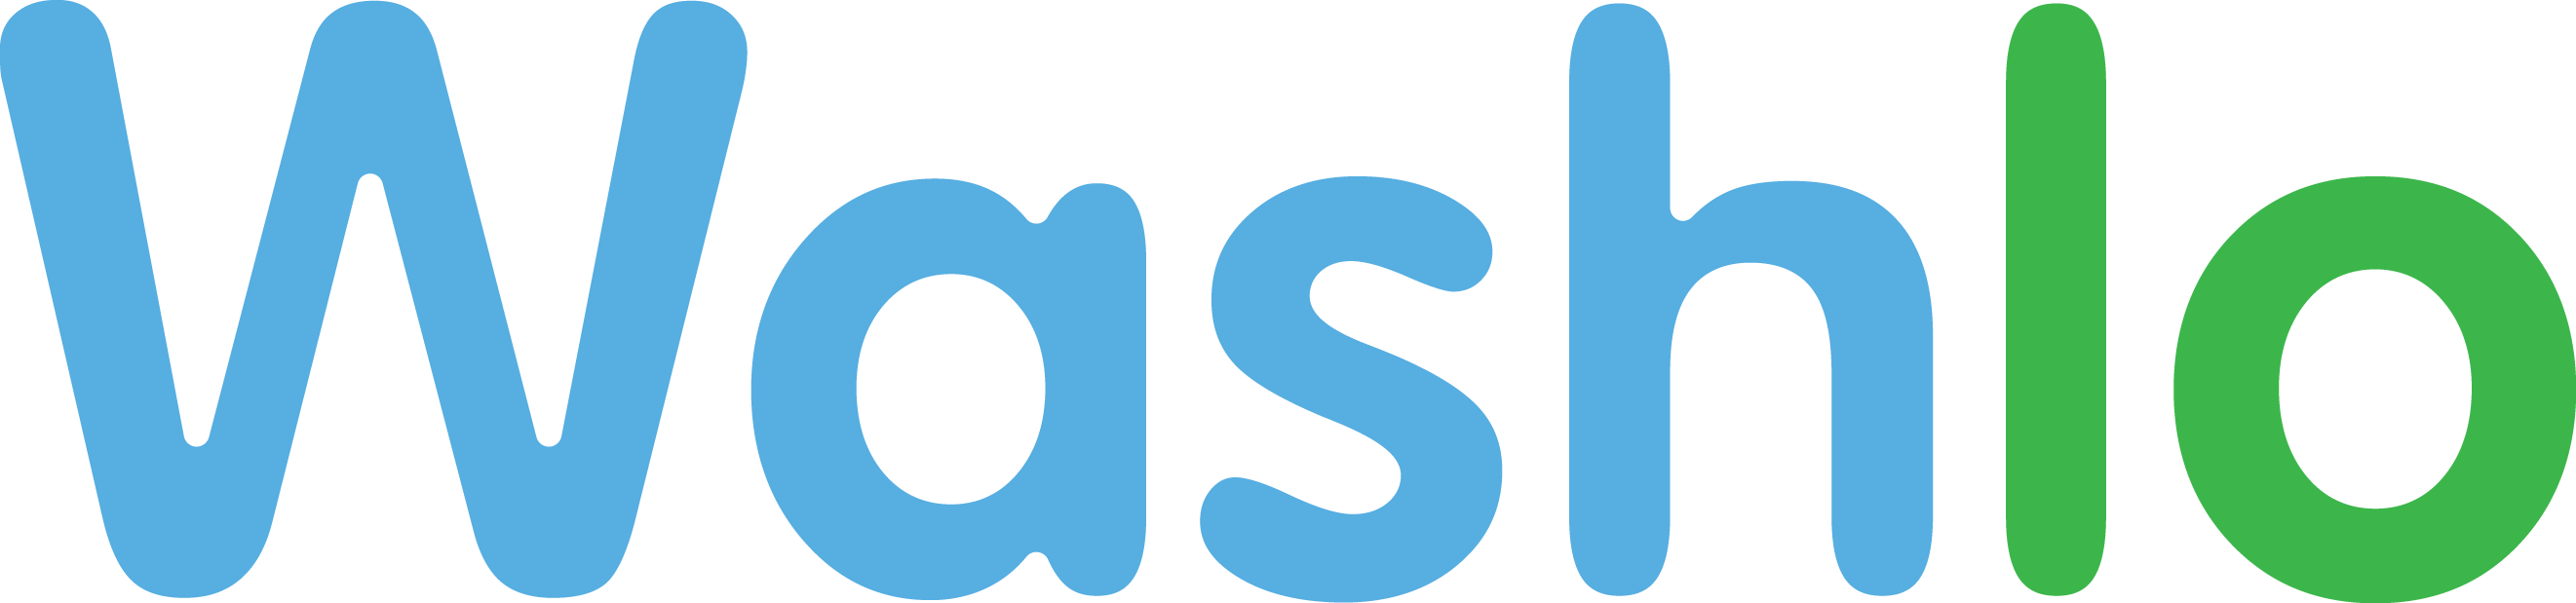 Logo - Wash Car App (2643x619)